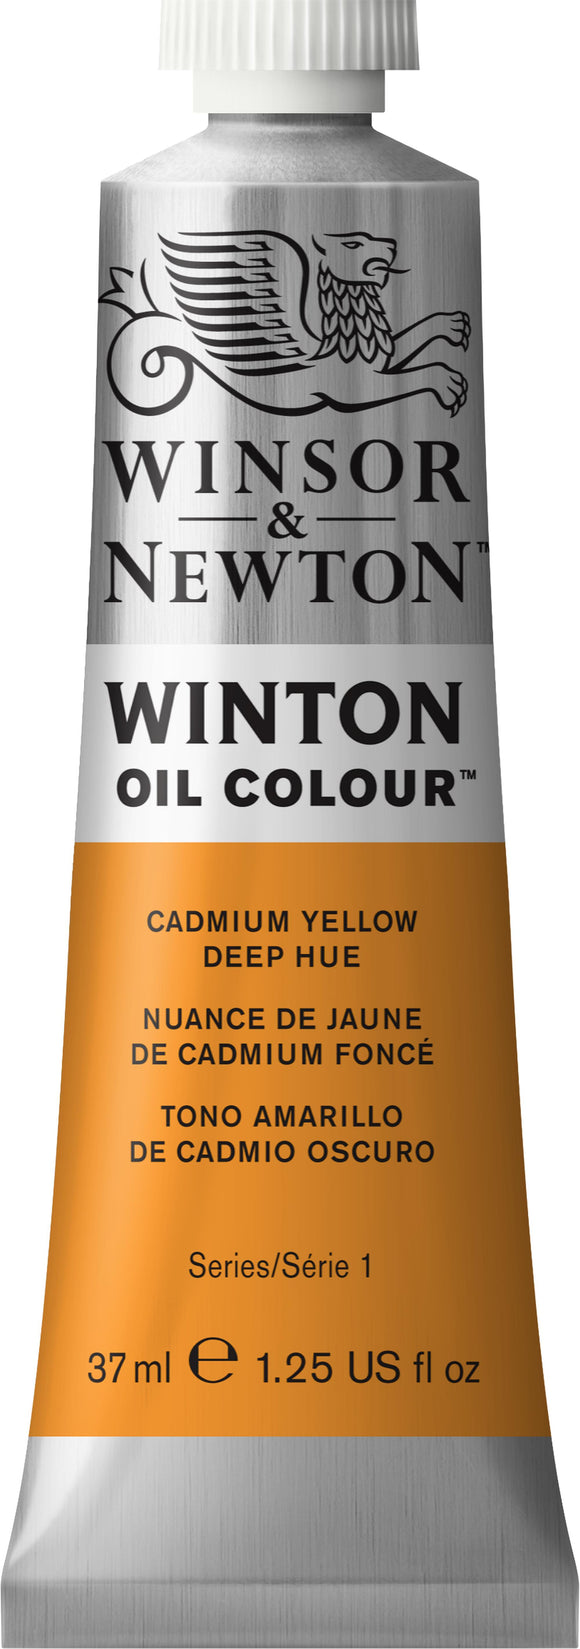 Winsor & Newton Winton Oil Colour Cadmium Yellow Deep Hue 37Ml